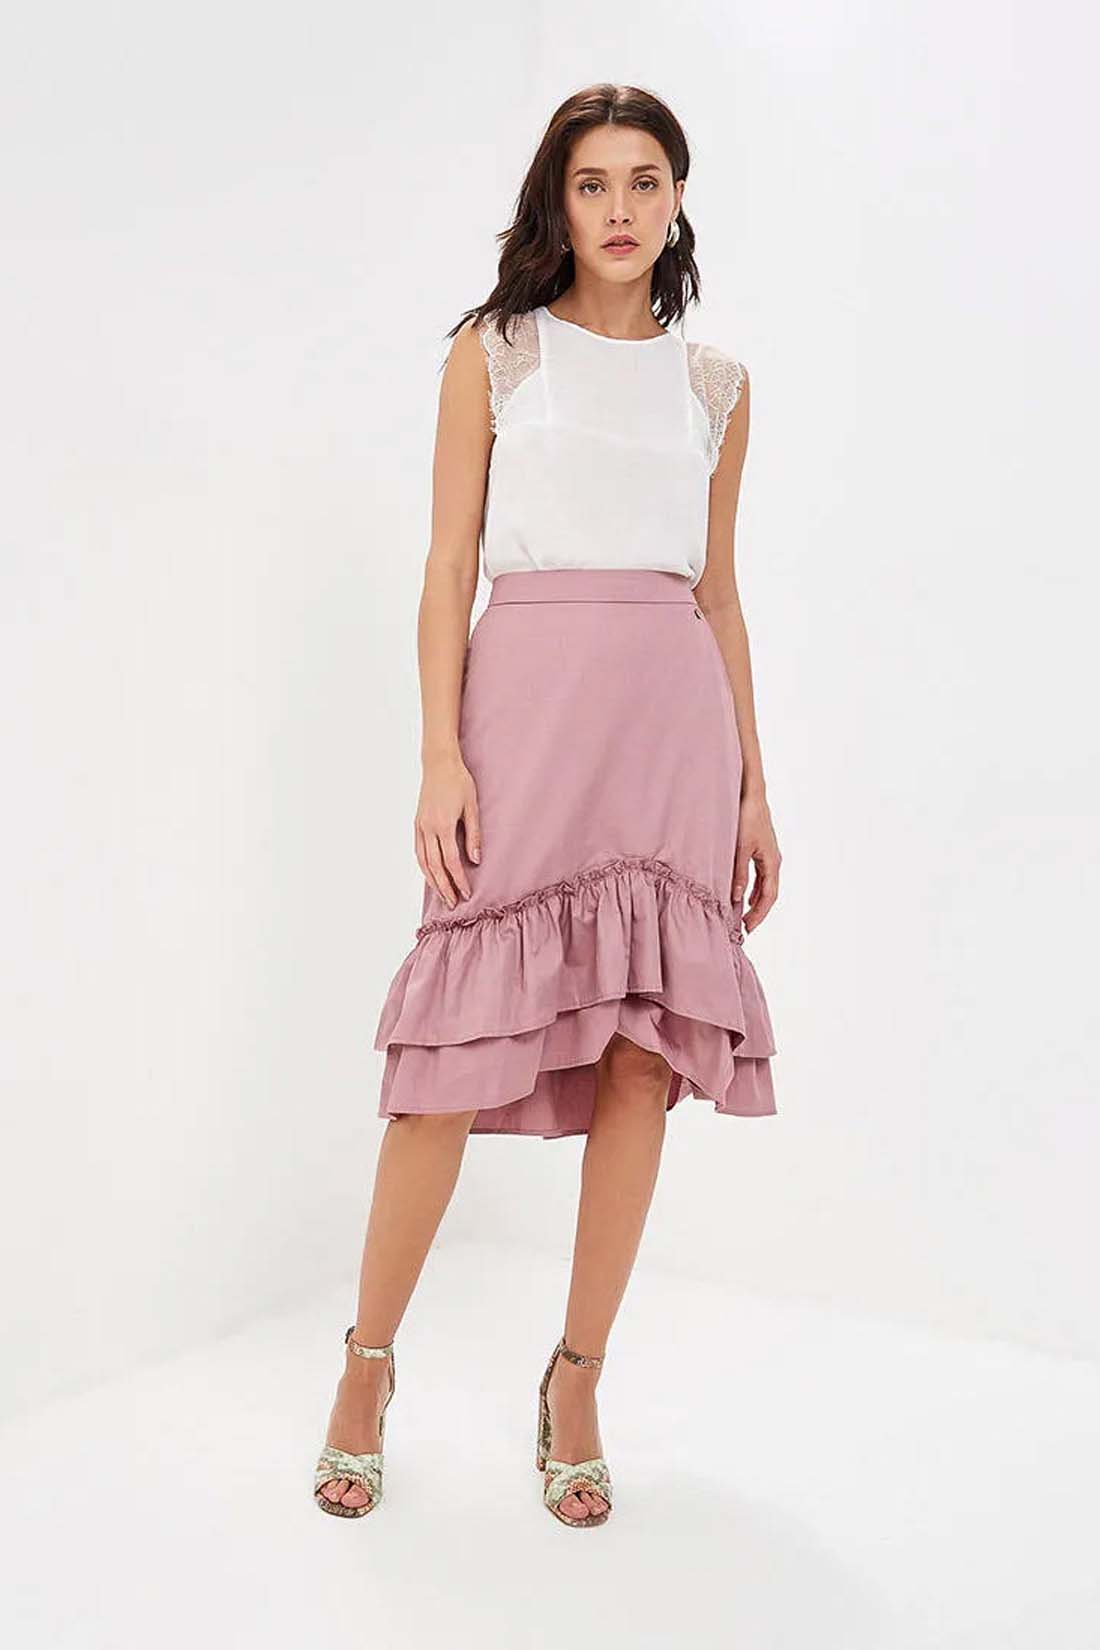 Розовая юбка с оборками (арт. baon B479018), размер M, цвет розовый Розовая юбка с оборками (арт. baon B479018) - фото 3